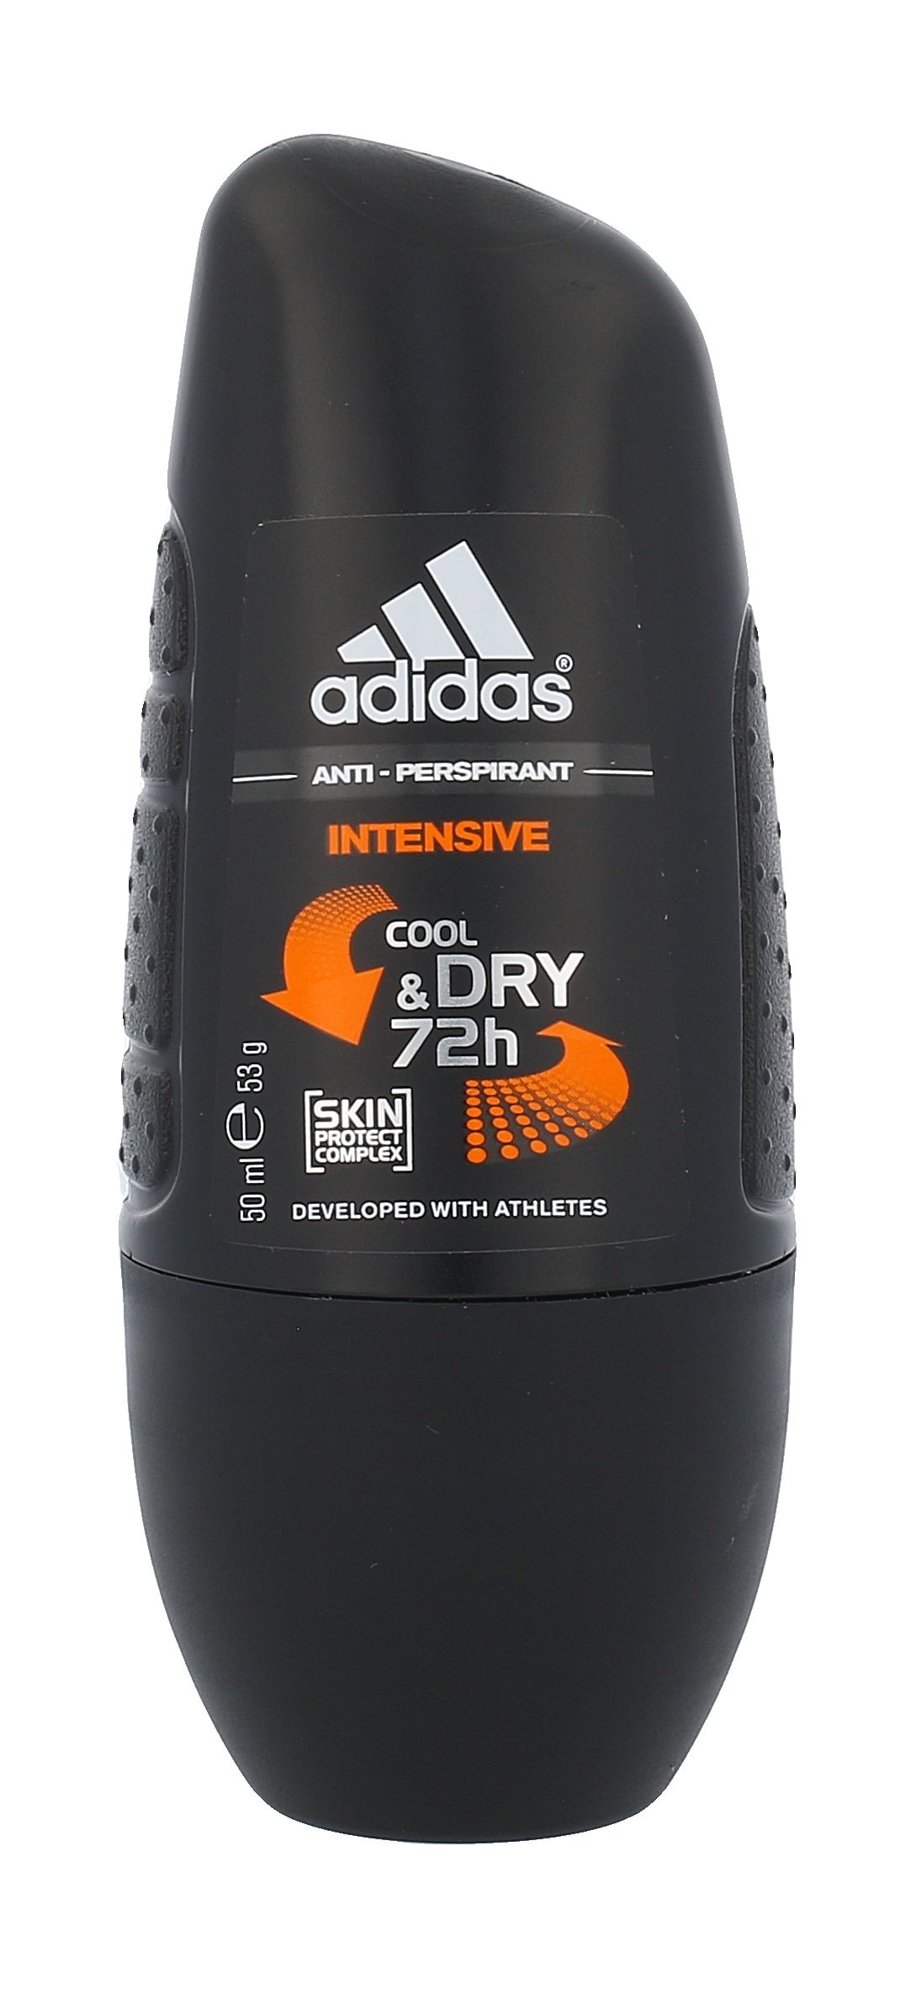 Adidas Intensive Cool & Dry 72h antipersperantas